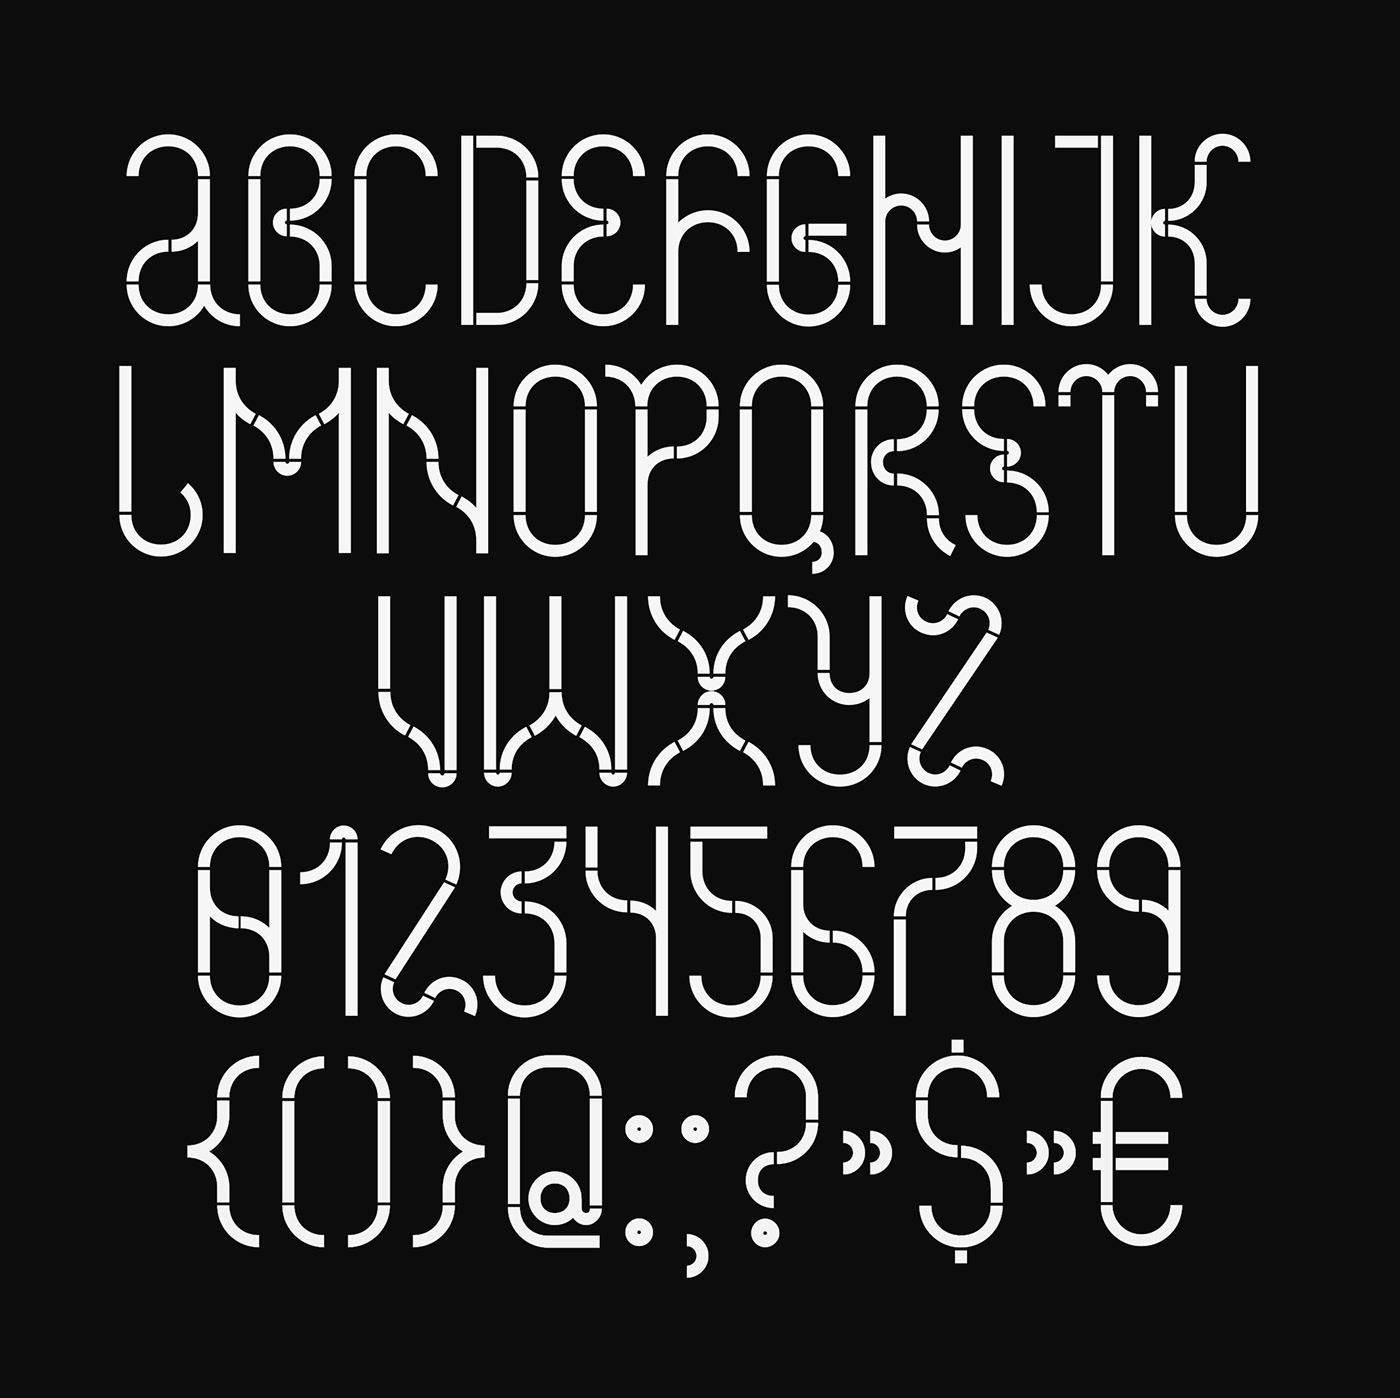 typeface design font lettering typography   ILLUSTRATION  3Dillustration 3dtypography cinema4d c4d 3DType